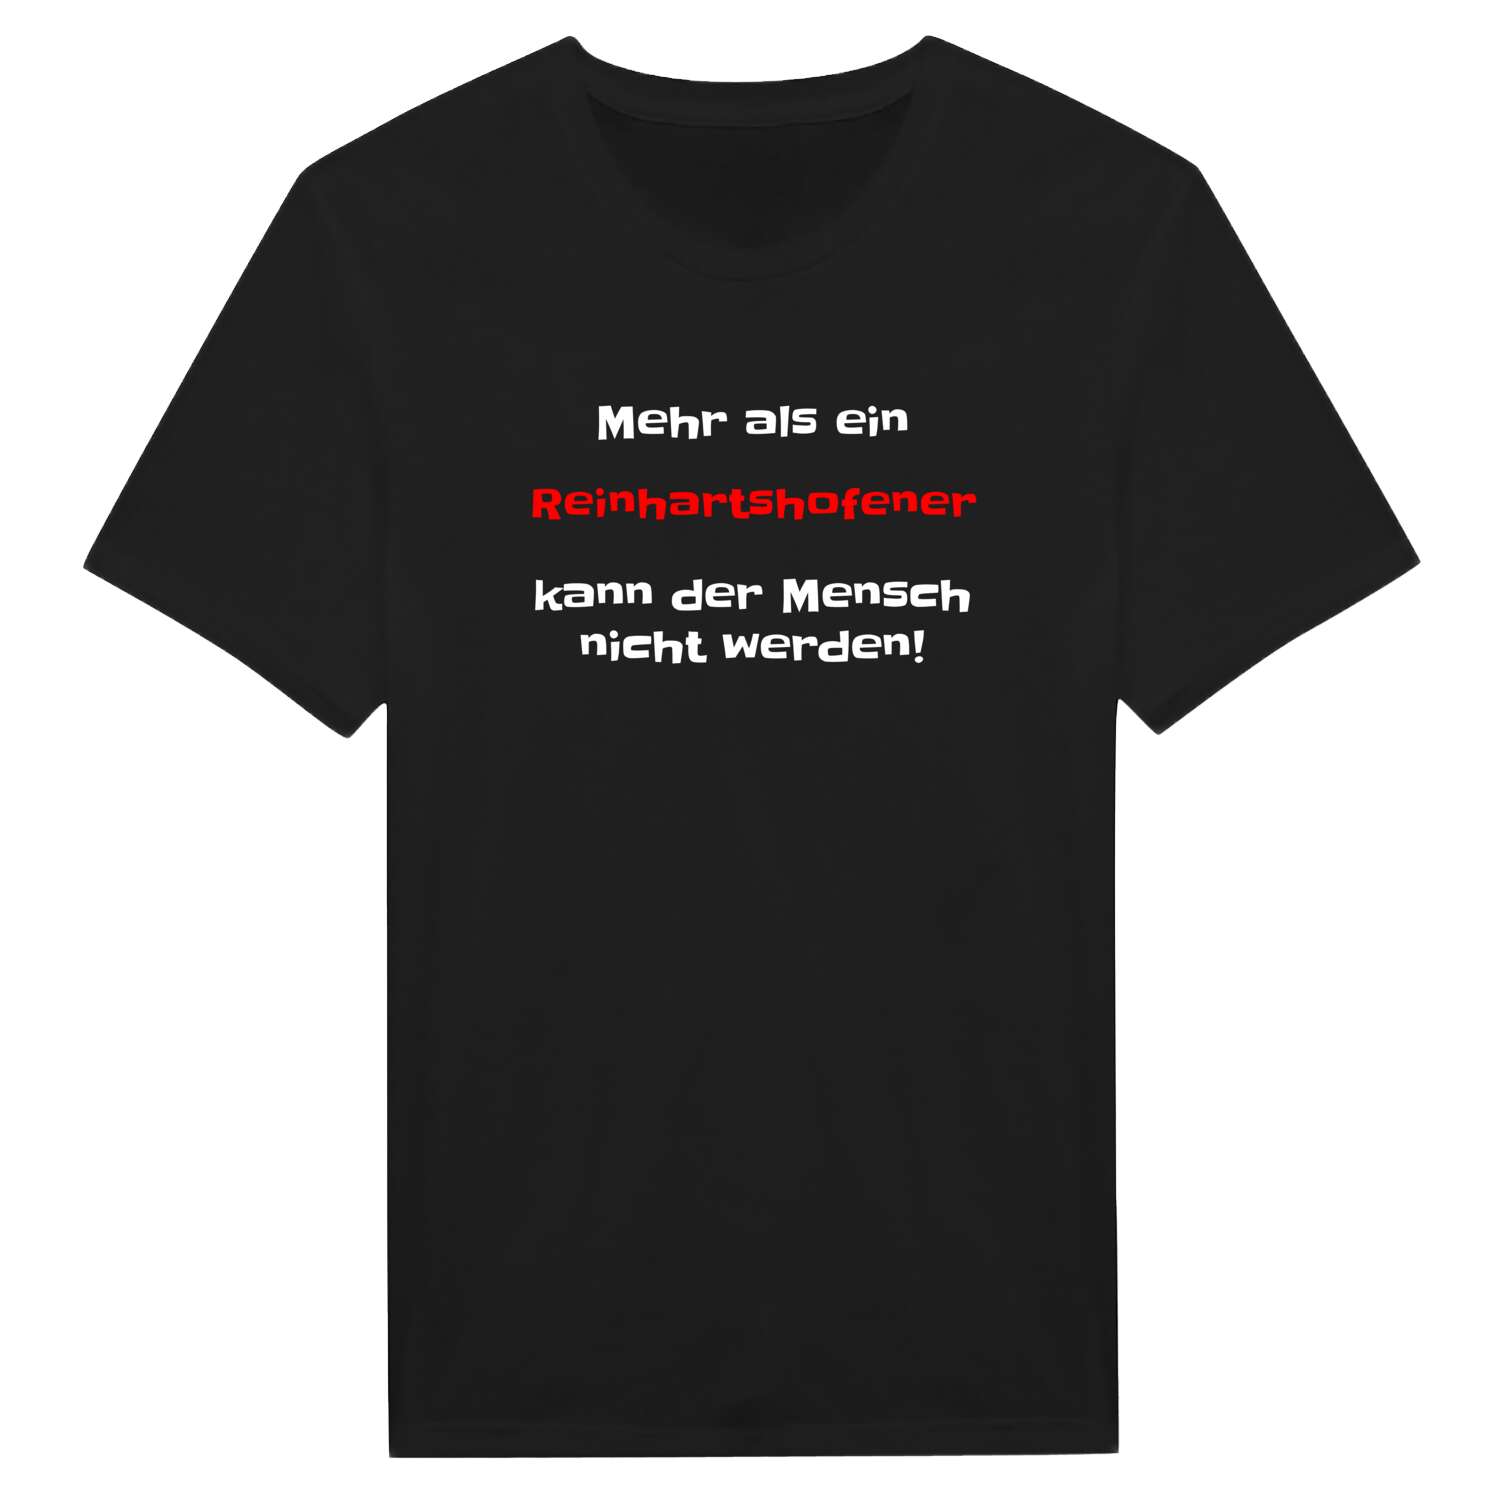 Reinhartshofen T-Shirt »Mehr als ein«